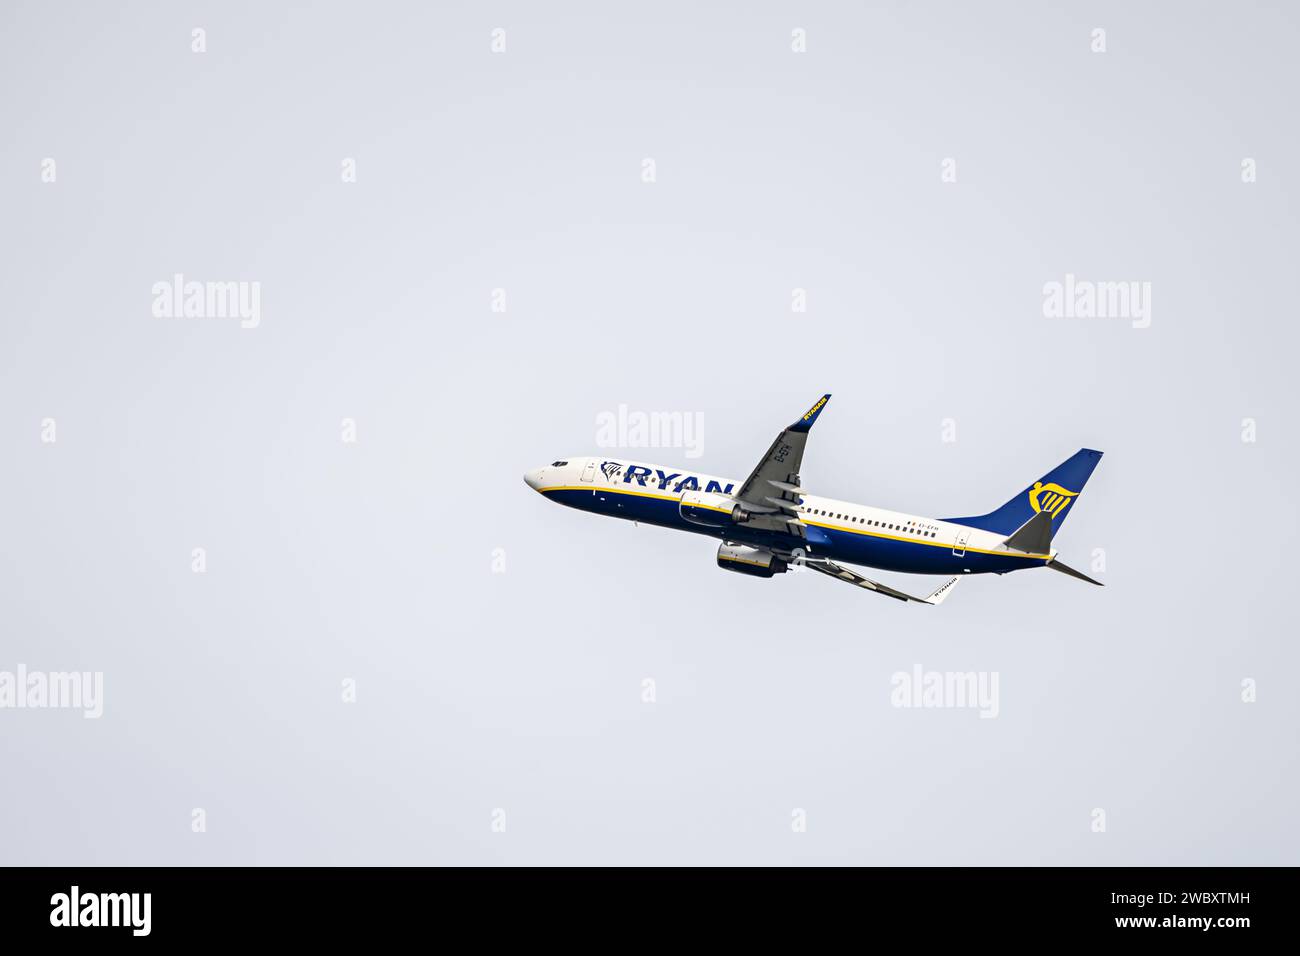 Un avión de pasajeros de una conocida compañía aérea ascendiendo en un cielo sin nubes Foto de stock